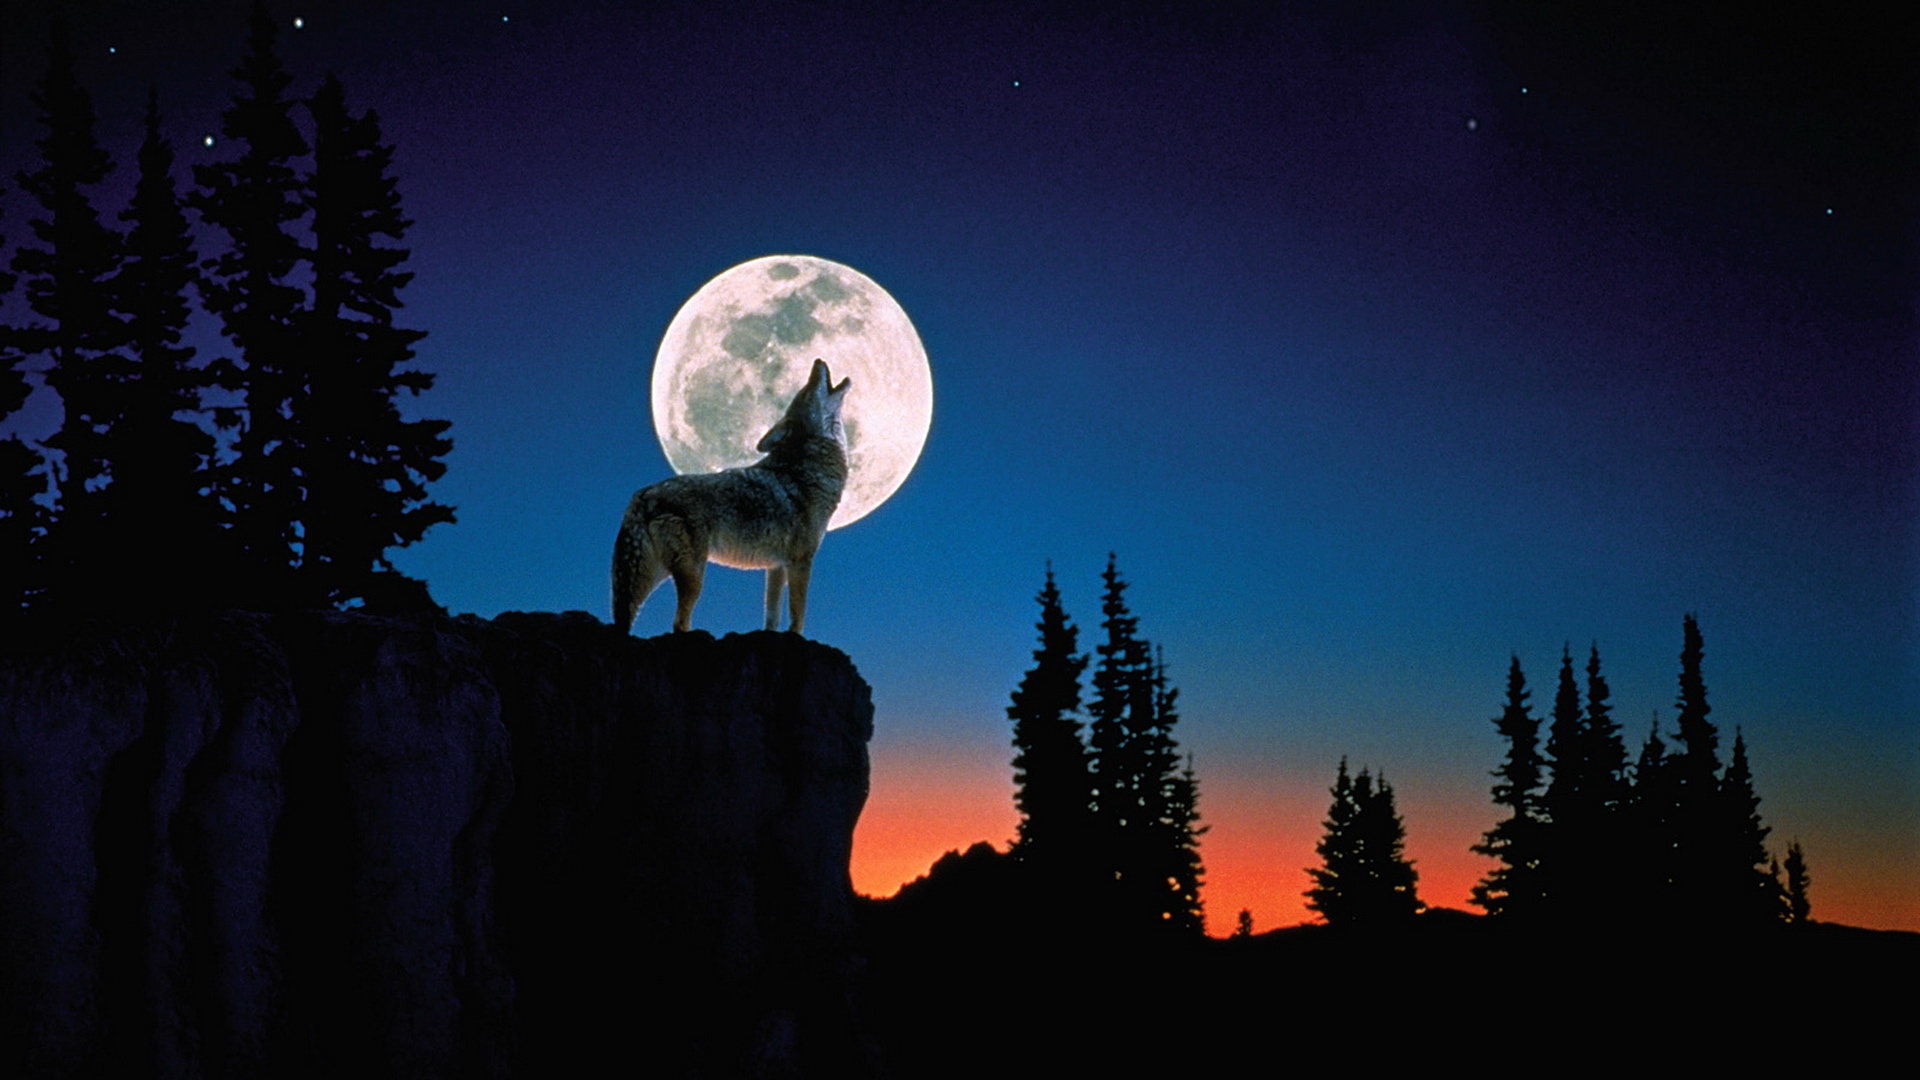 狼 月亮 夜晚 - Pixabay上的免费照片 - Pixabay